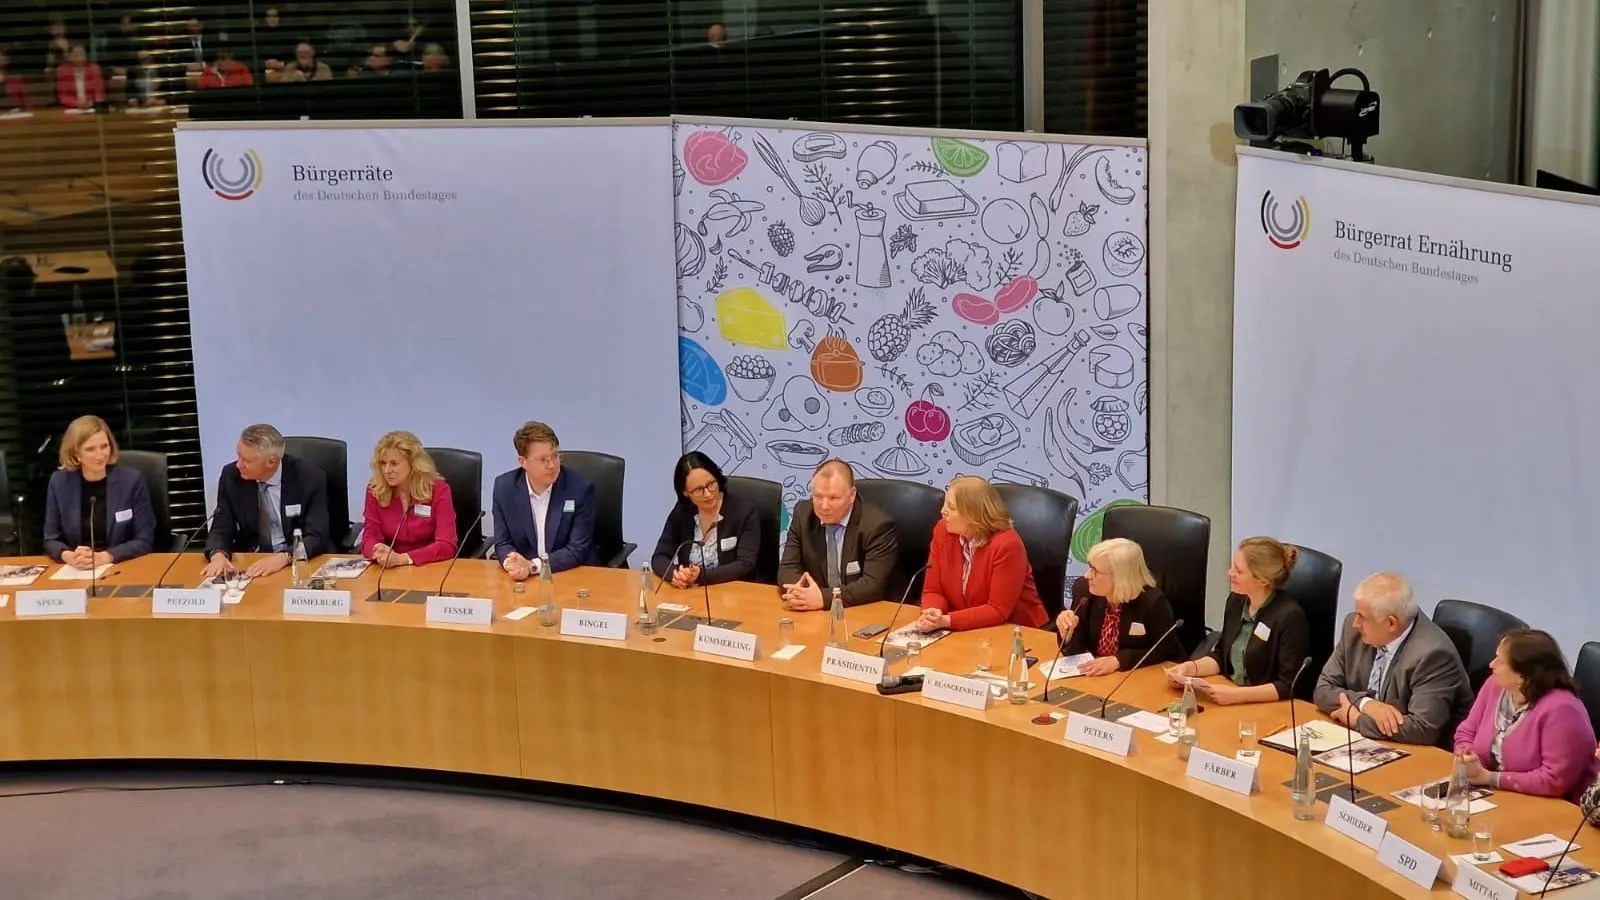 Der Bürgerrat übergab dem Bundestag seine Empfehlungen. „Nachrücker“ Martin Kümmerling saß dabei direkt neben der Bundestagspräsidentin Bärbel Bas (rotes Jackett). (Foto: Thomas Winkler)